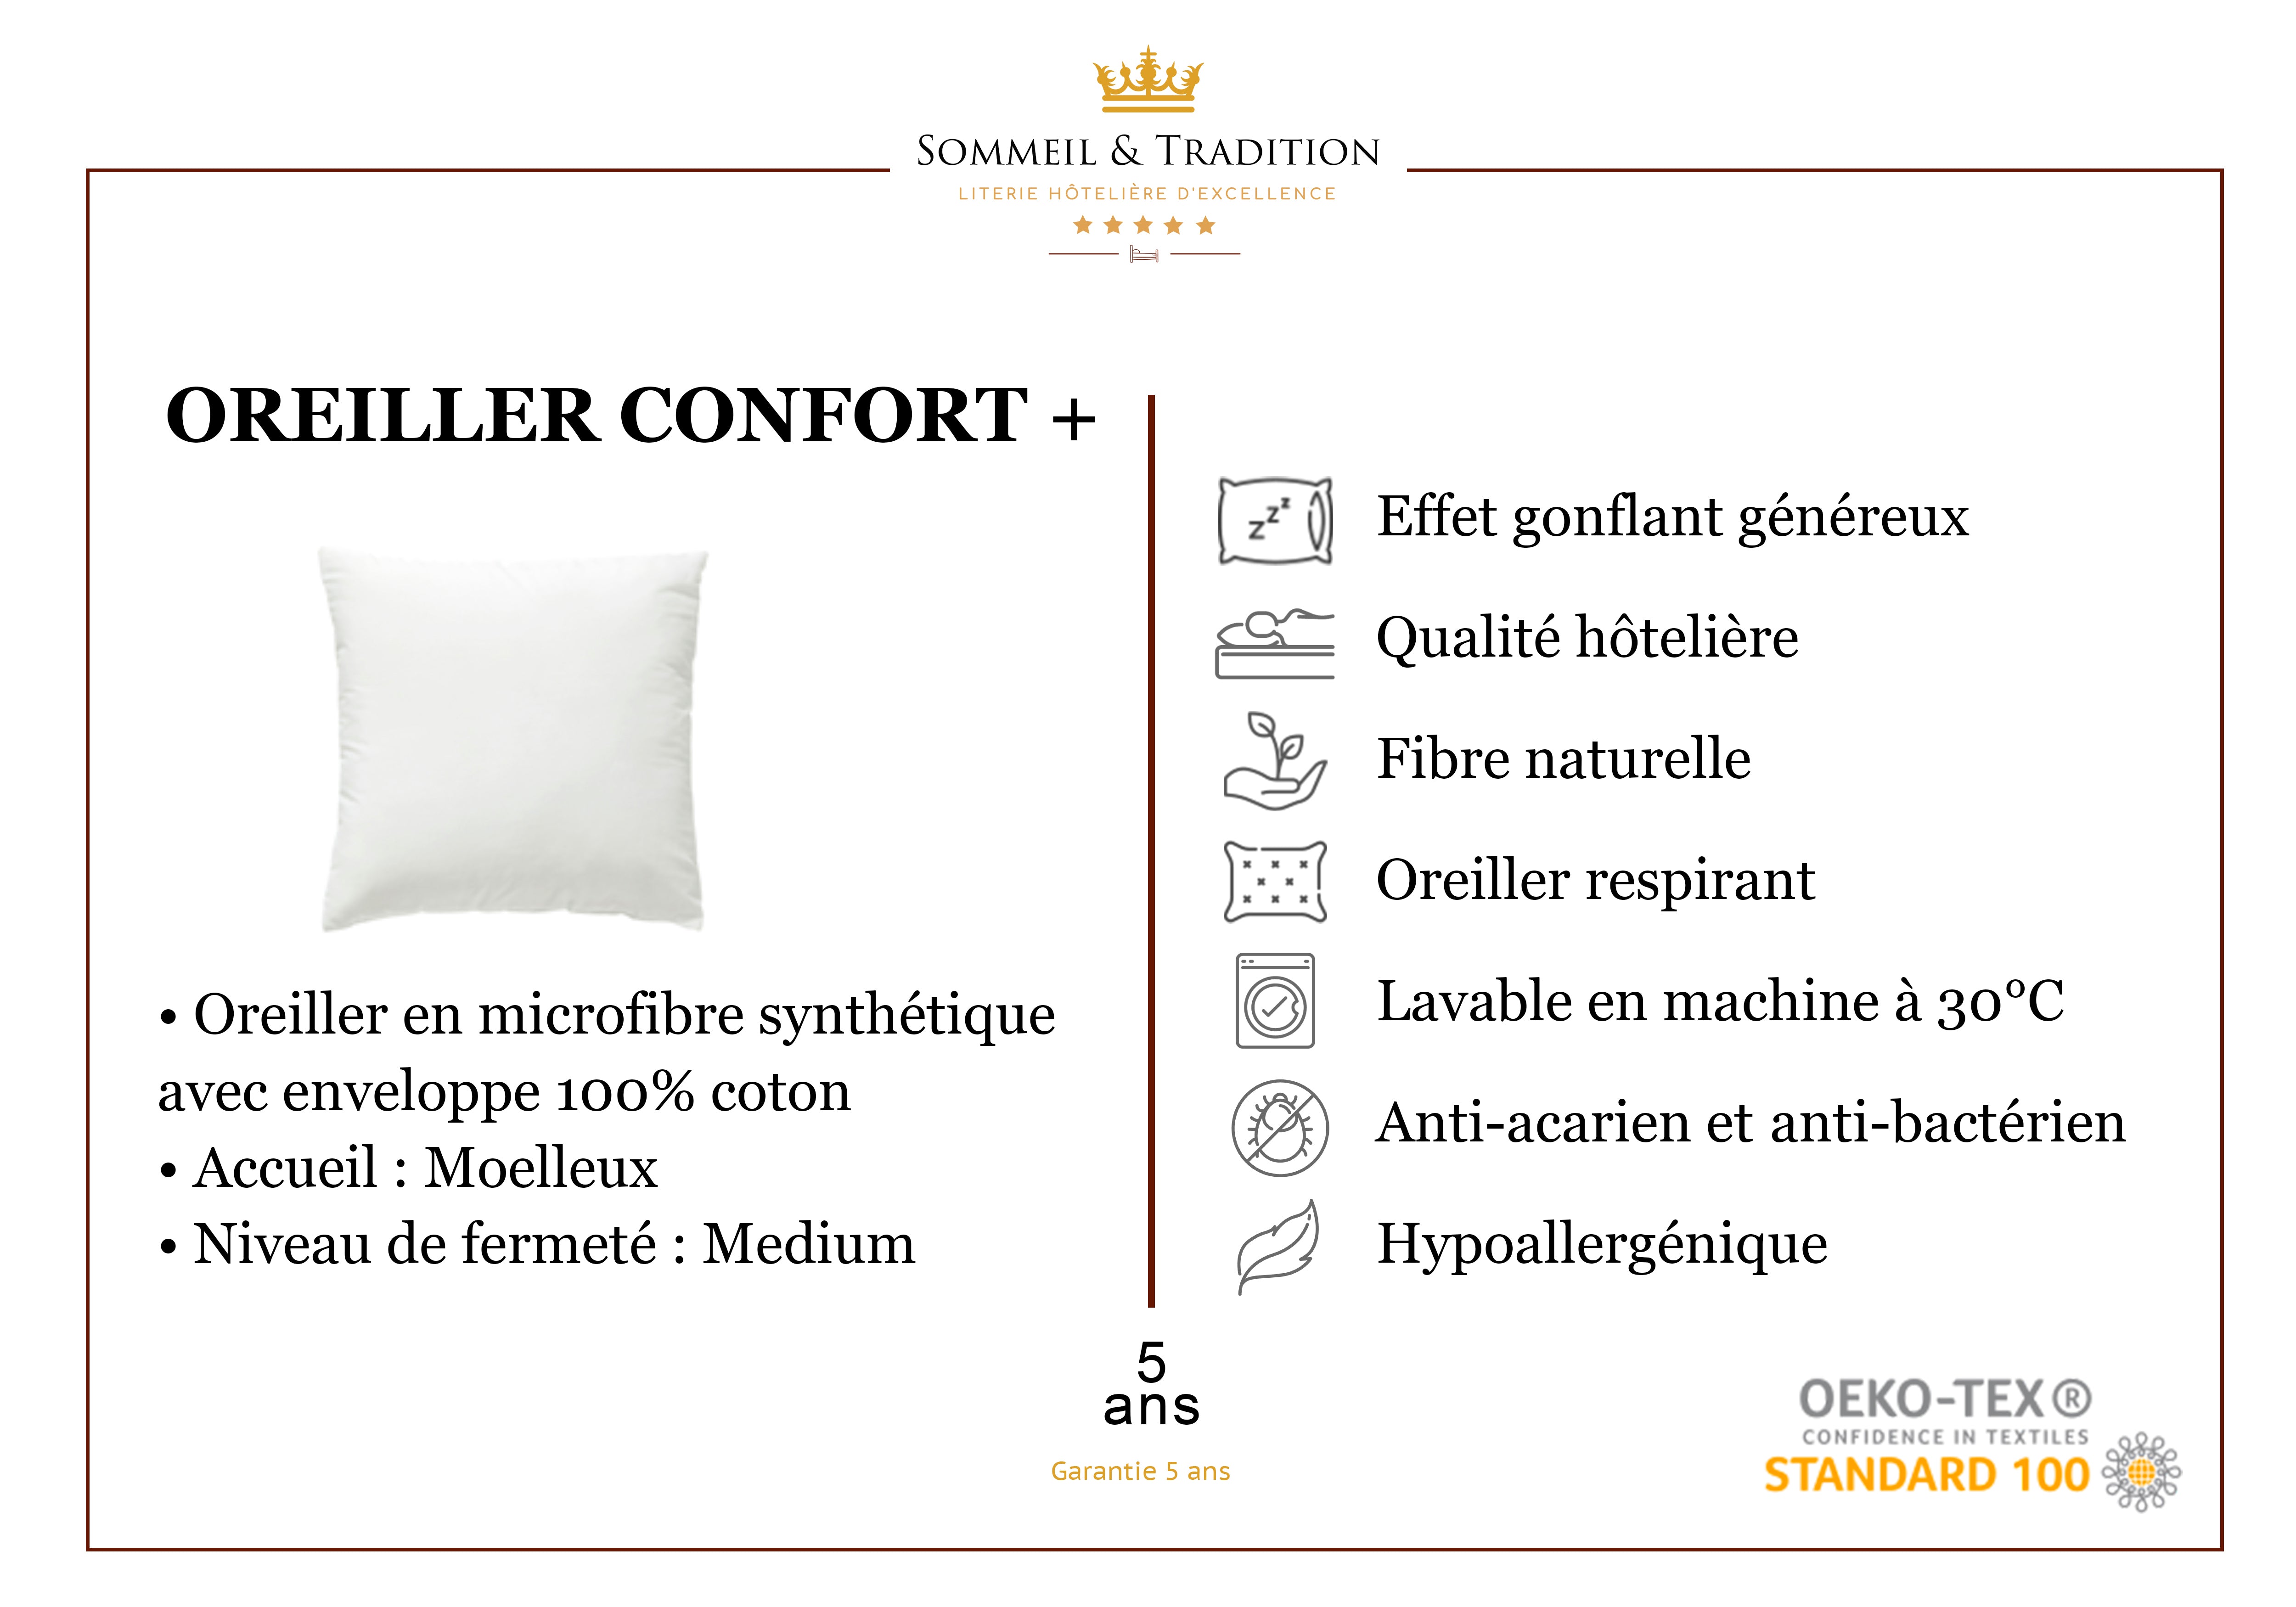 Oreiller Confort +